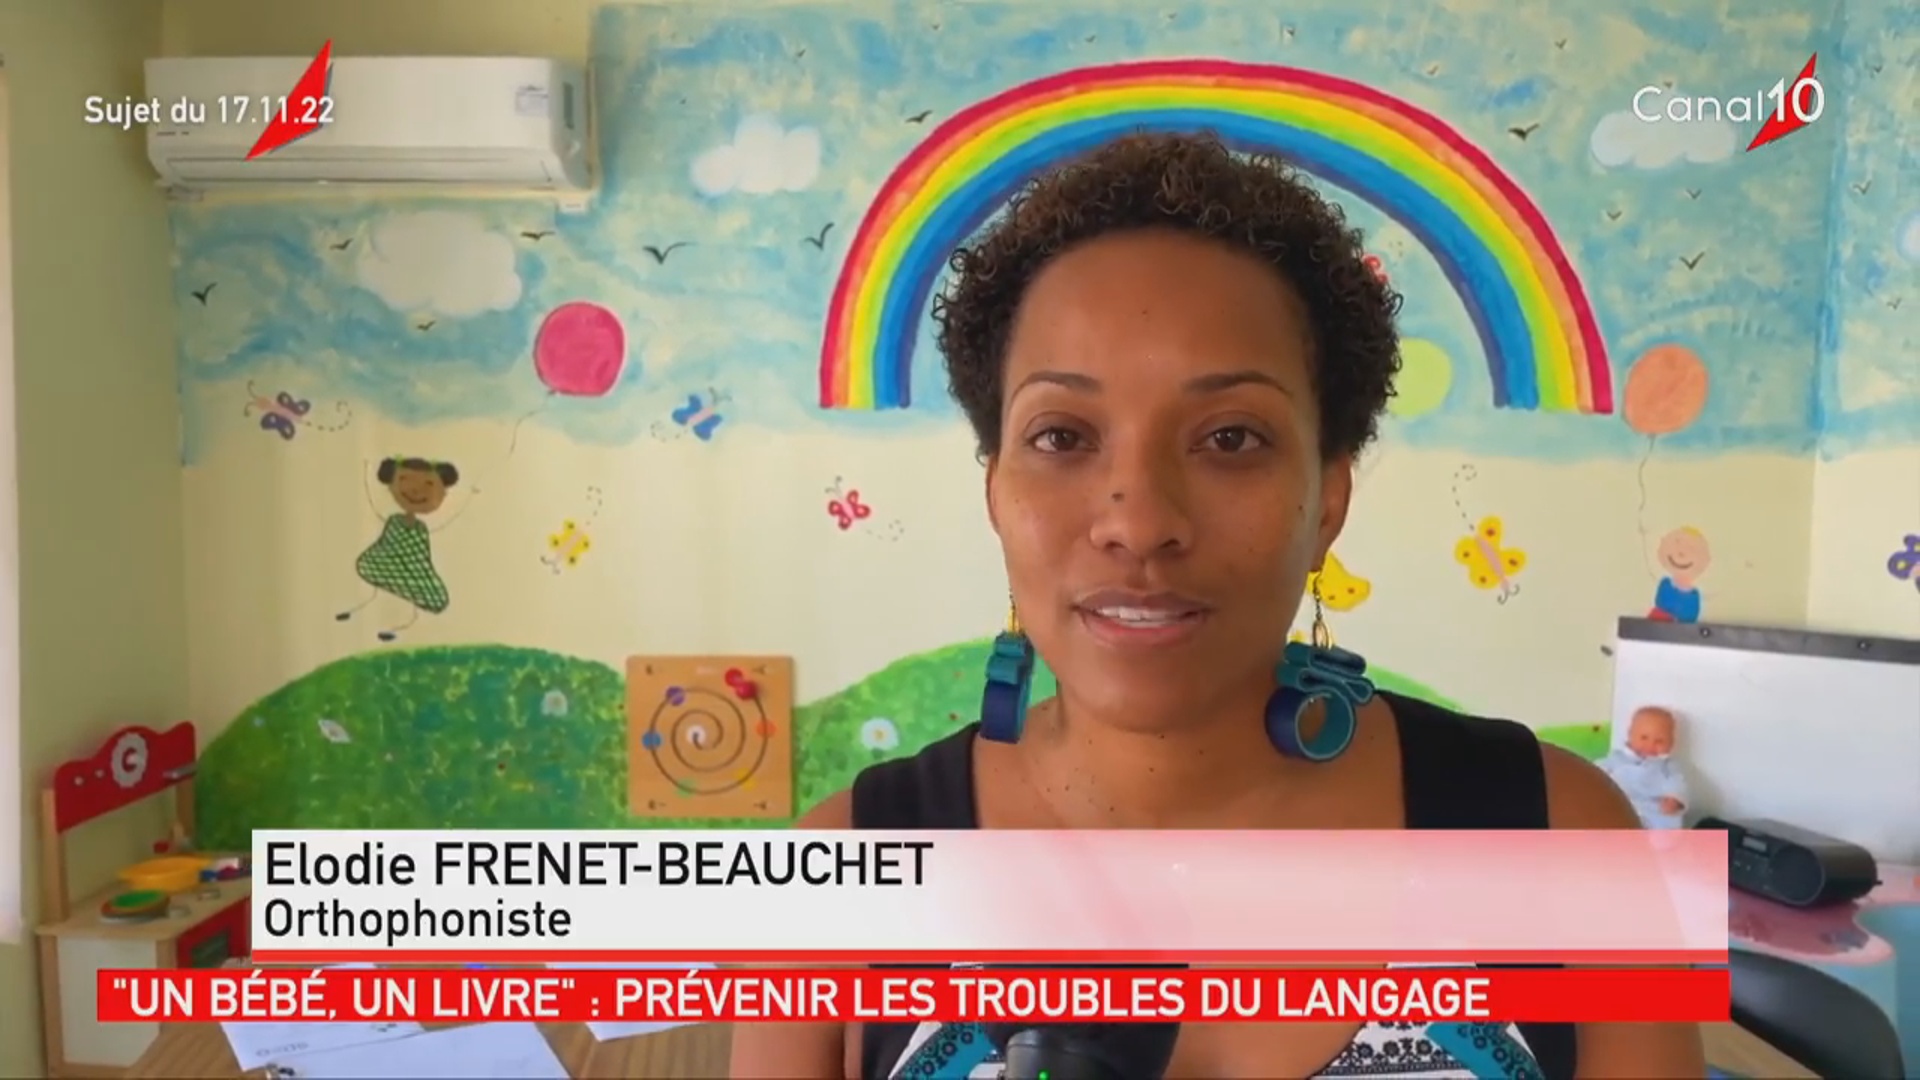 [Vidéo] Onews Guadeloupe. Le jt de Canal 10